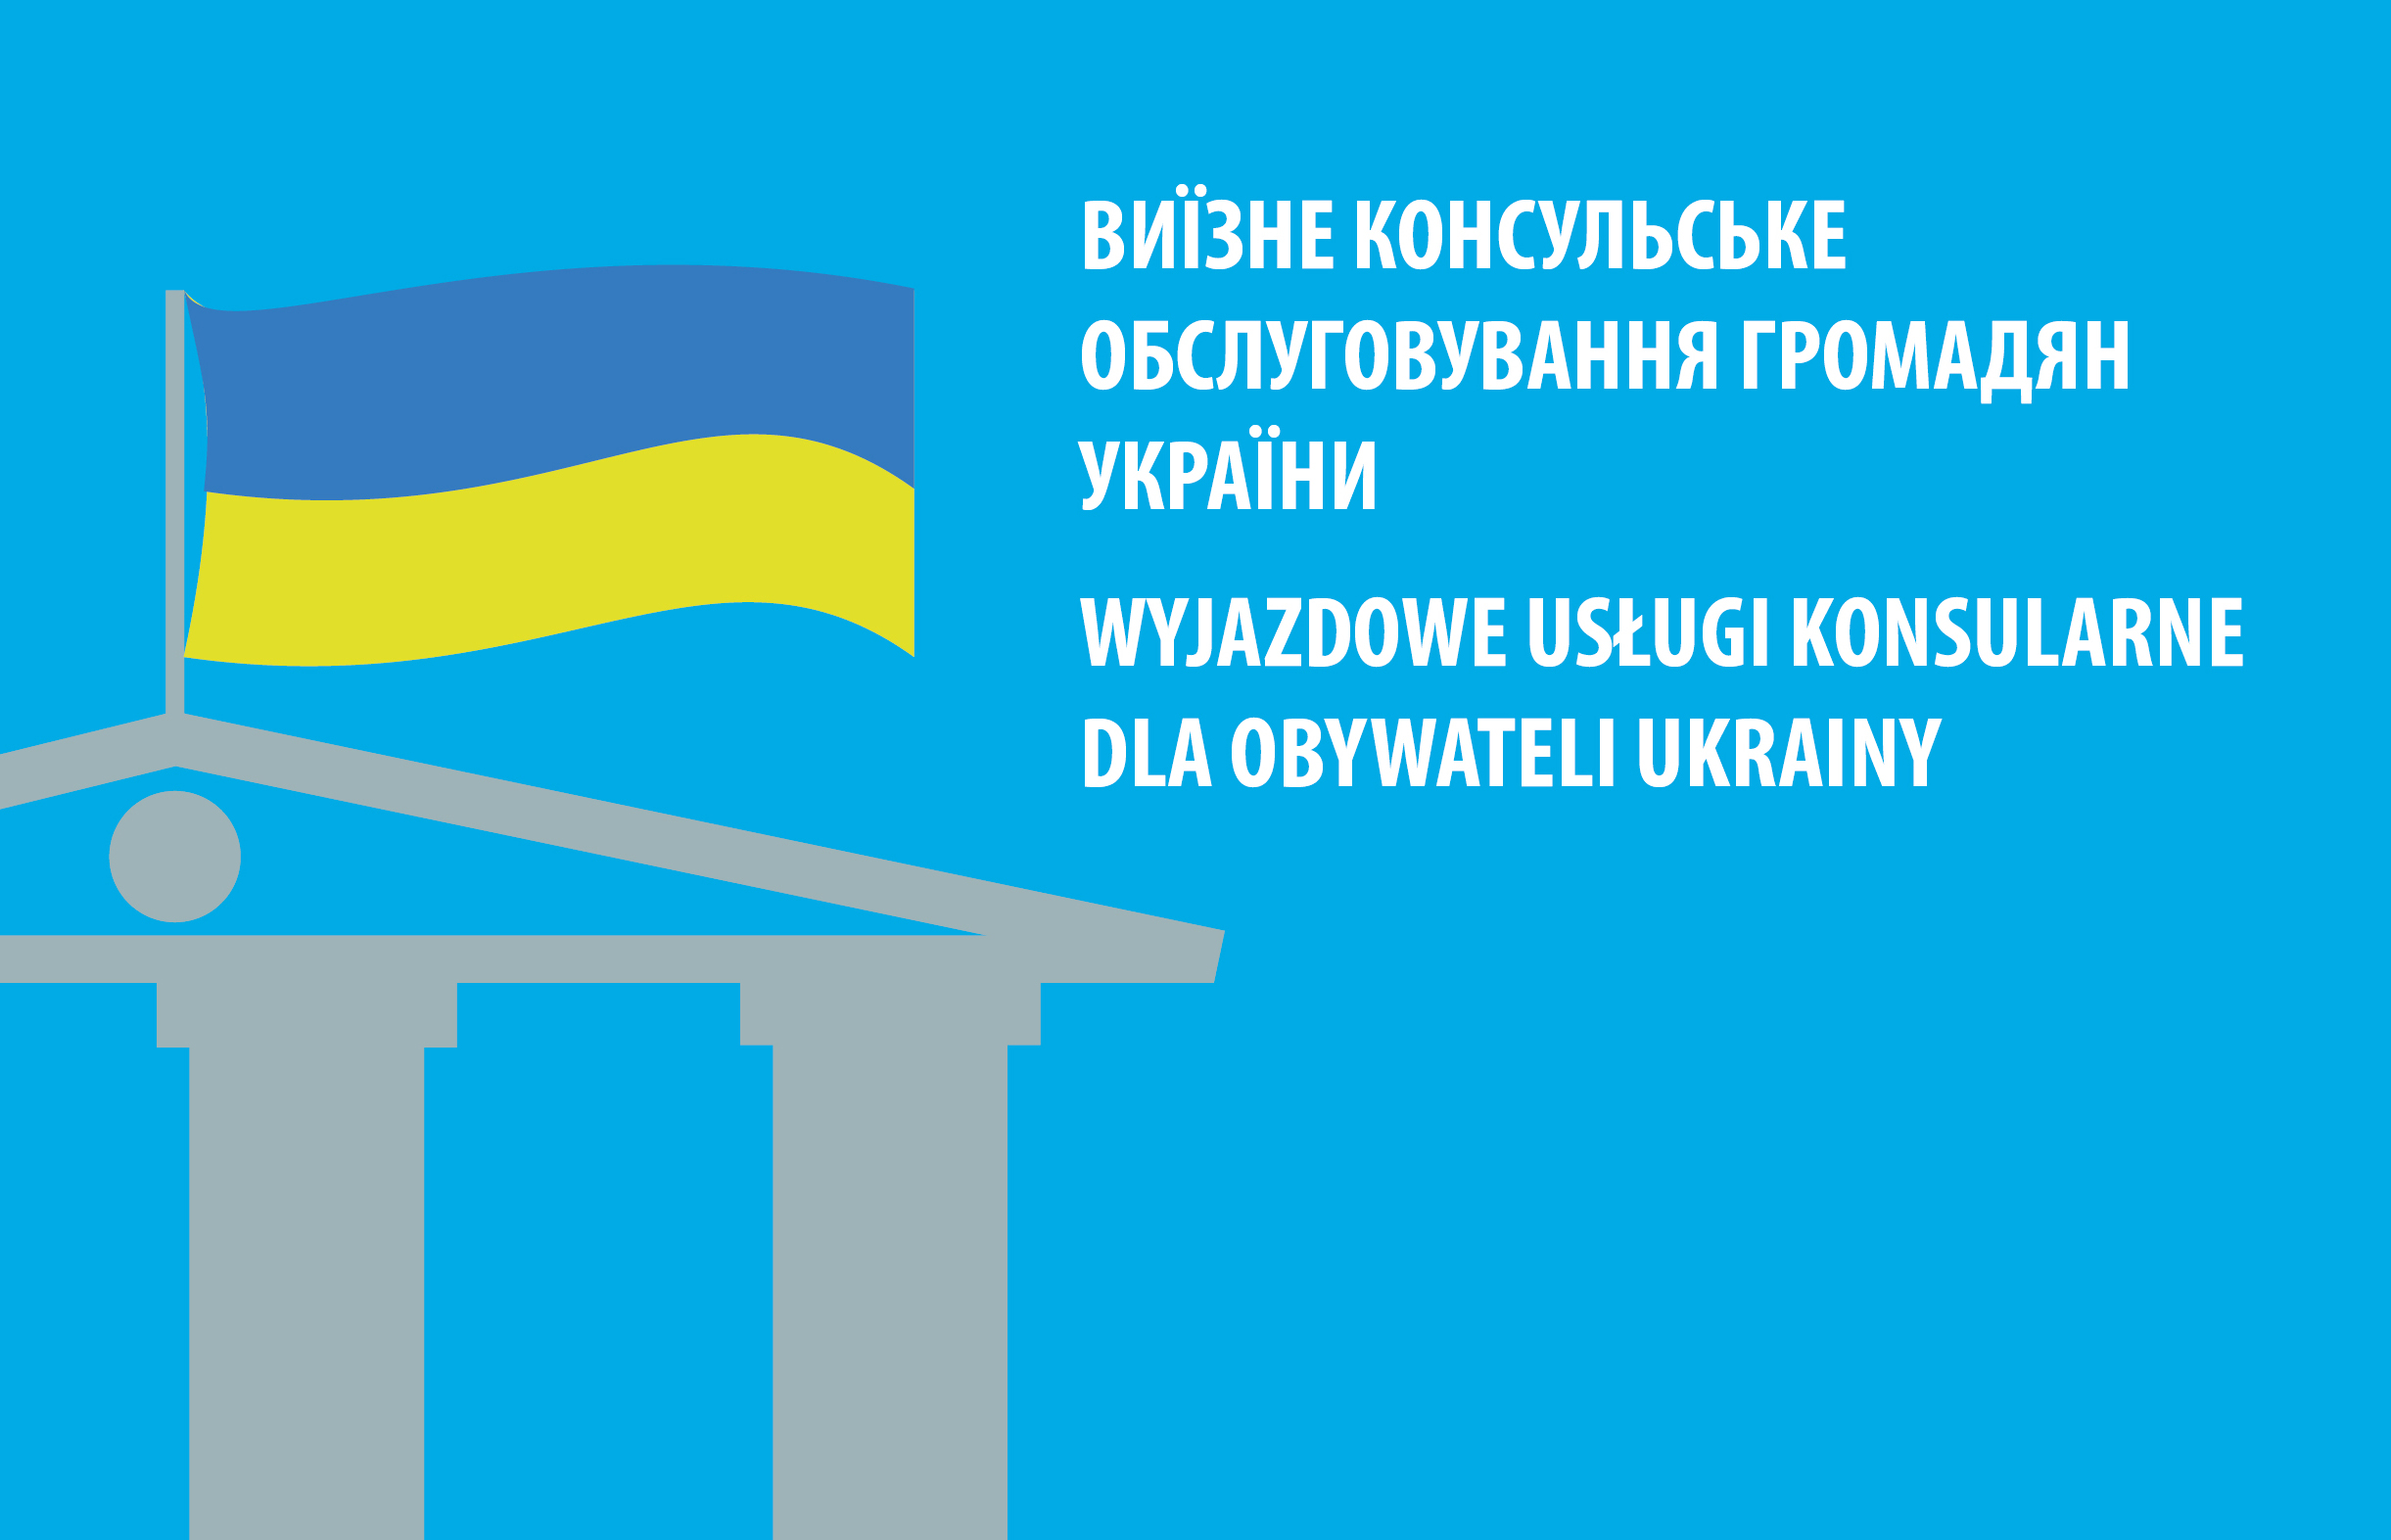 Spotkanie dla obywateli Ukrainy z wicekonsulem